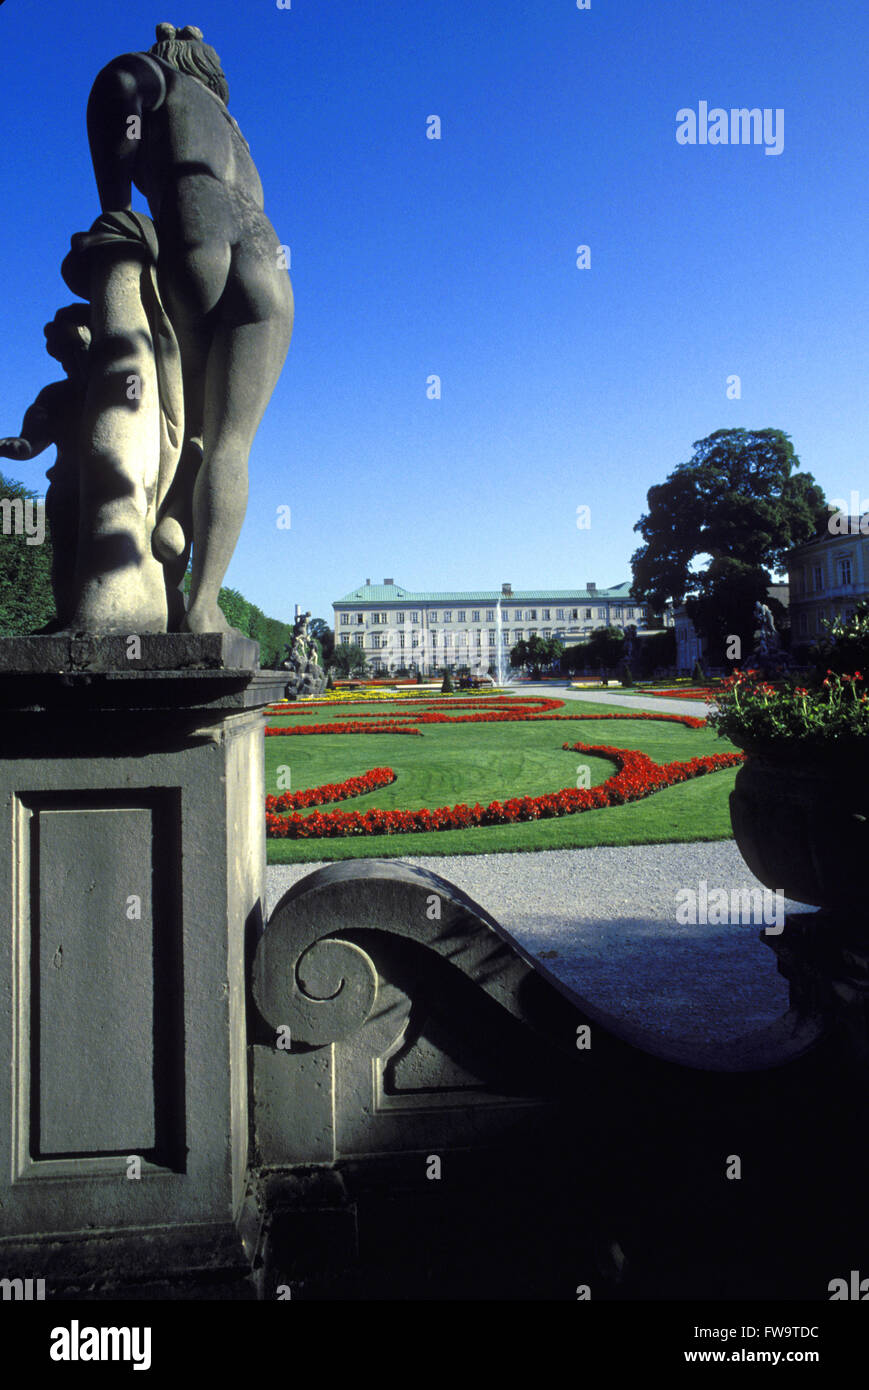 AUT, Austria, Salzburg, park and castle Mirabell.  AUT, Oesterreich, Salzburg, Schloss und Park Mirabell. Stock Photo